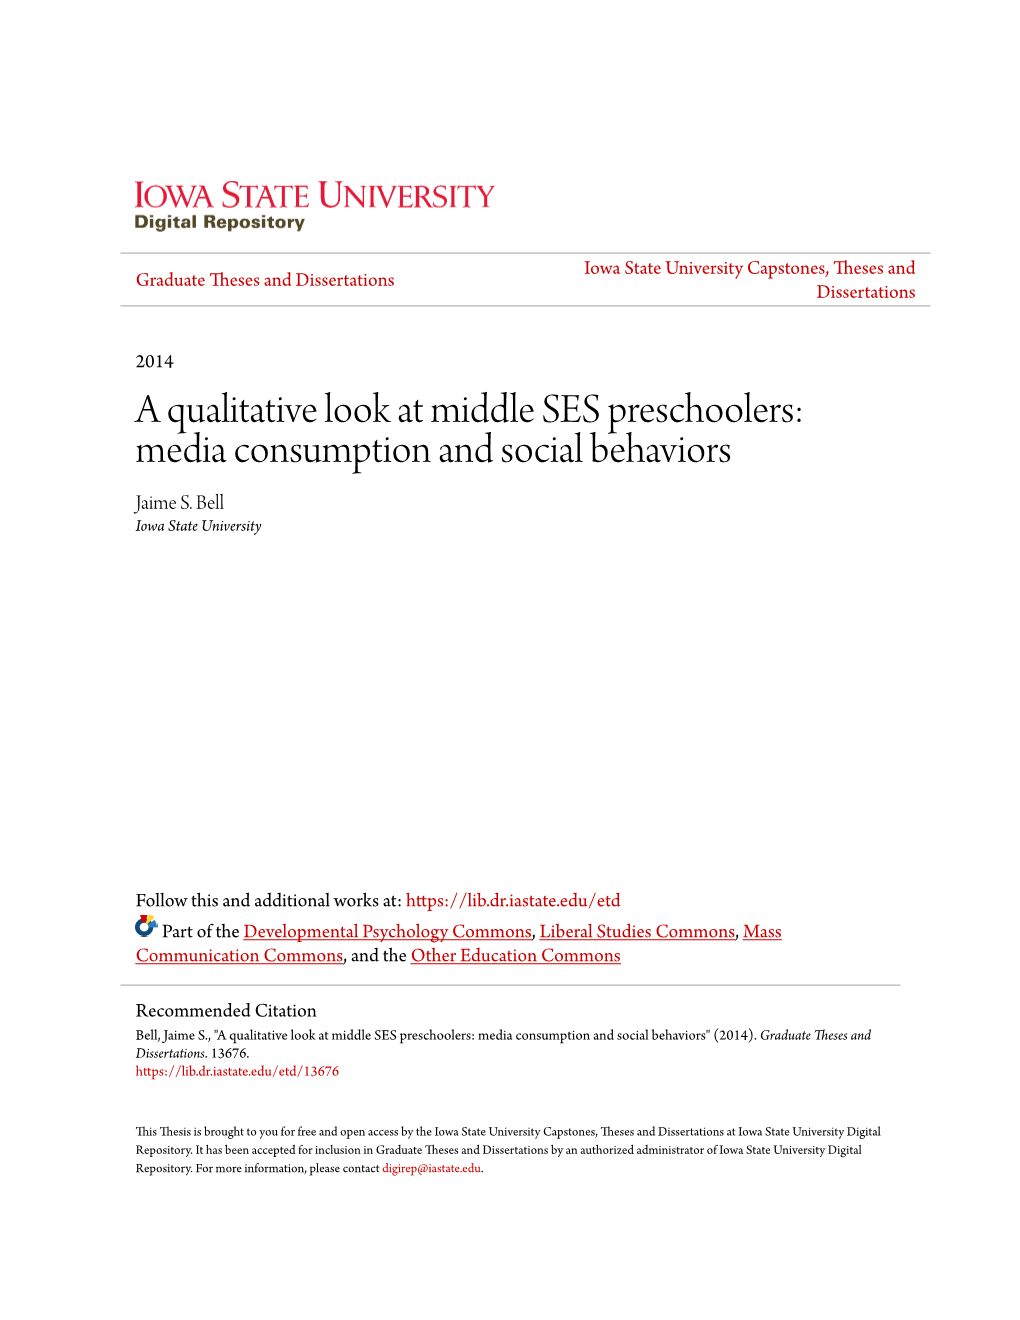 A Qualitative Look at Middle SES Preschoolers: Media Consumption and Social Behaviors Jaime S